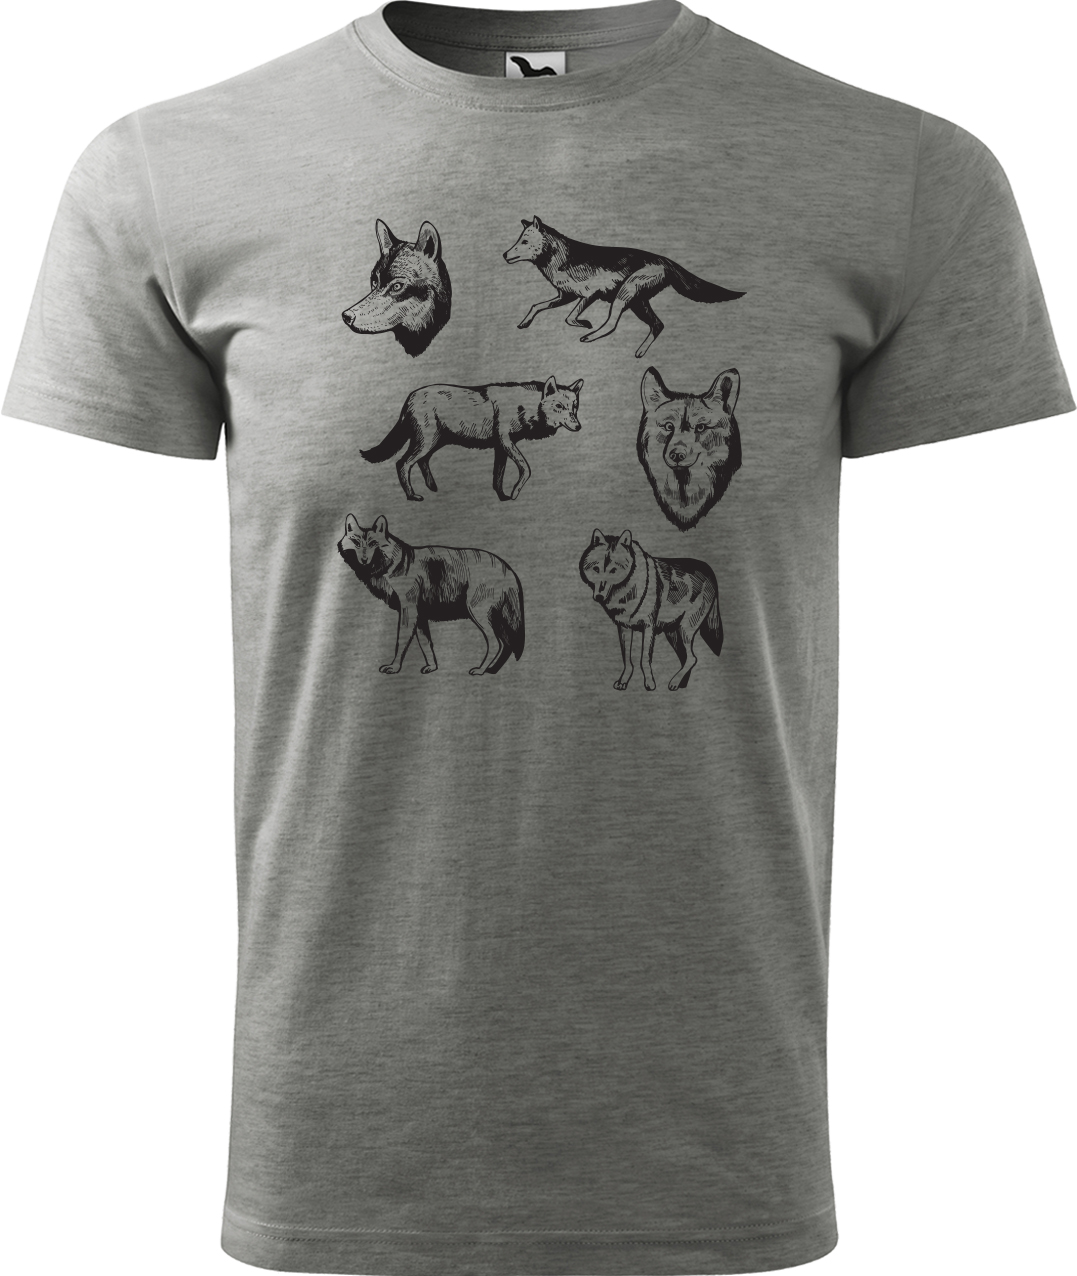 Pánské tričko s vlkem - Vlci Velikost: 2XL, Barva: Tmavě šedý melír (12), Střih: pánský